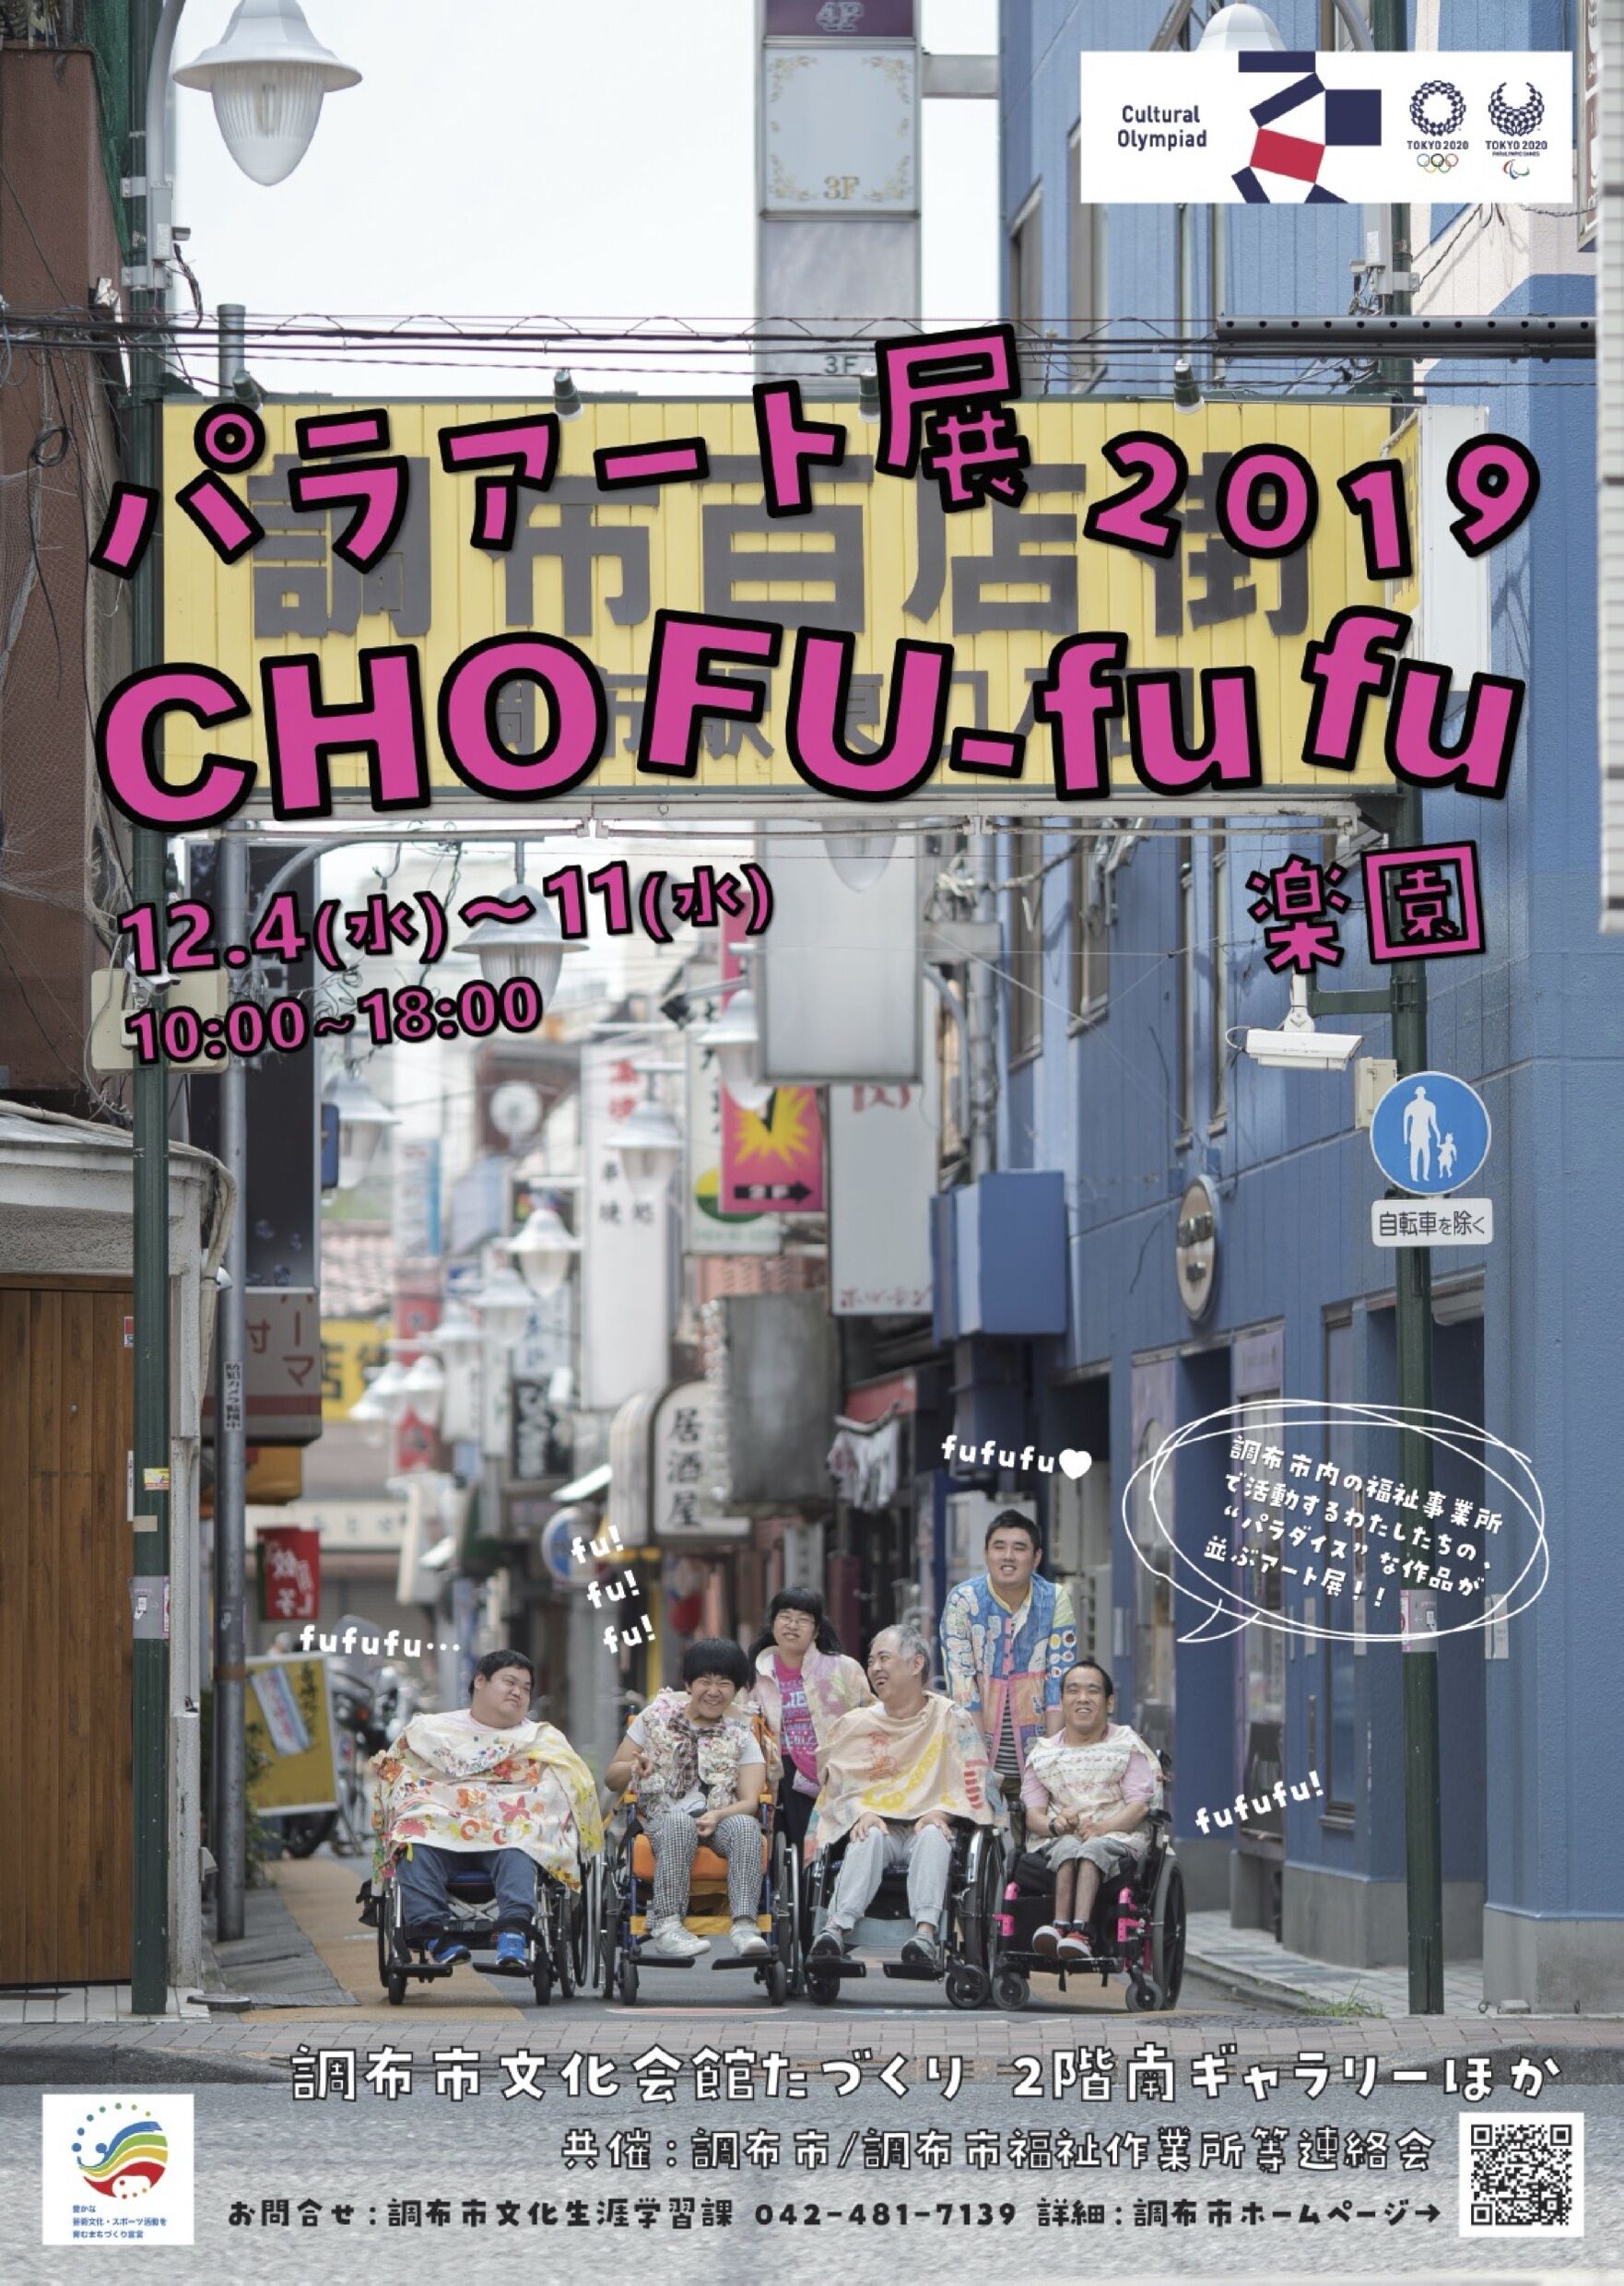 パラアート展2019　CHOFU-fu fu楽園画像